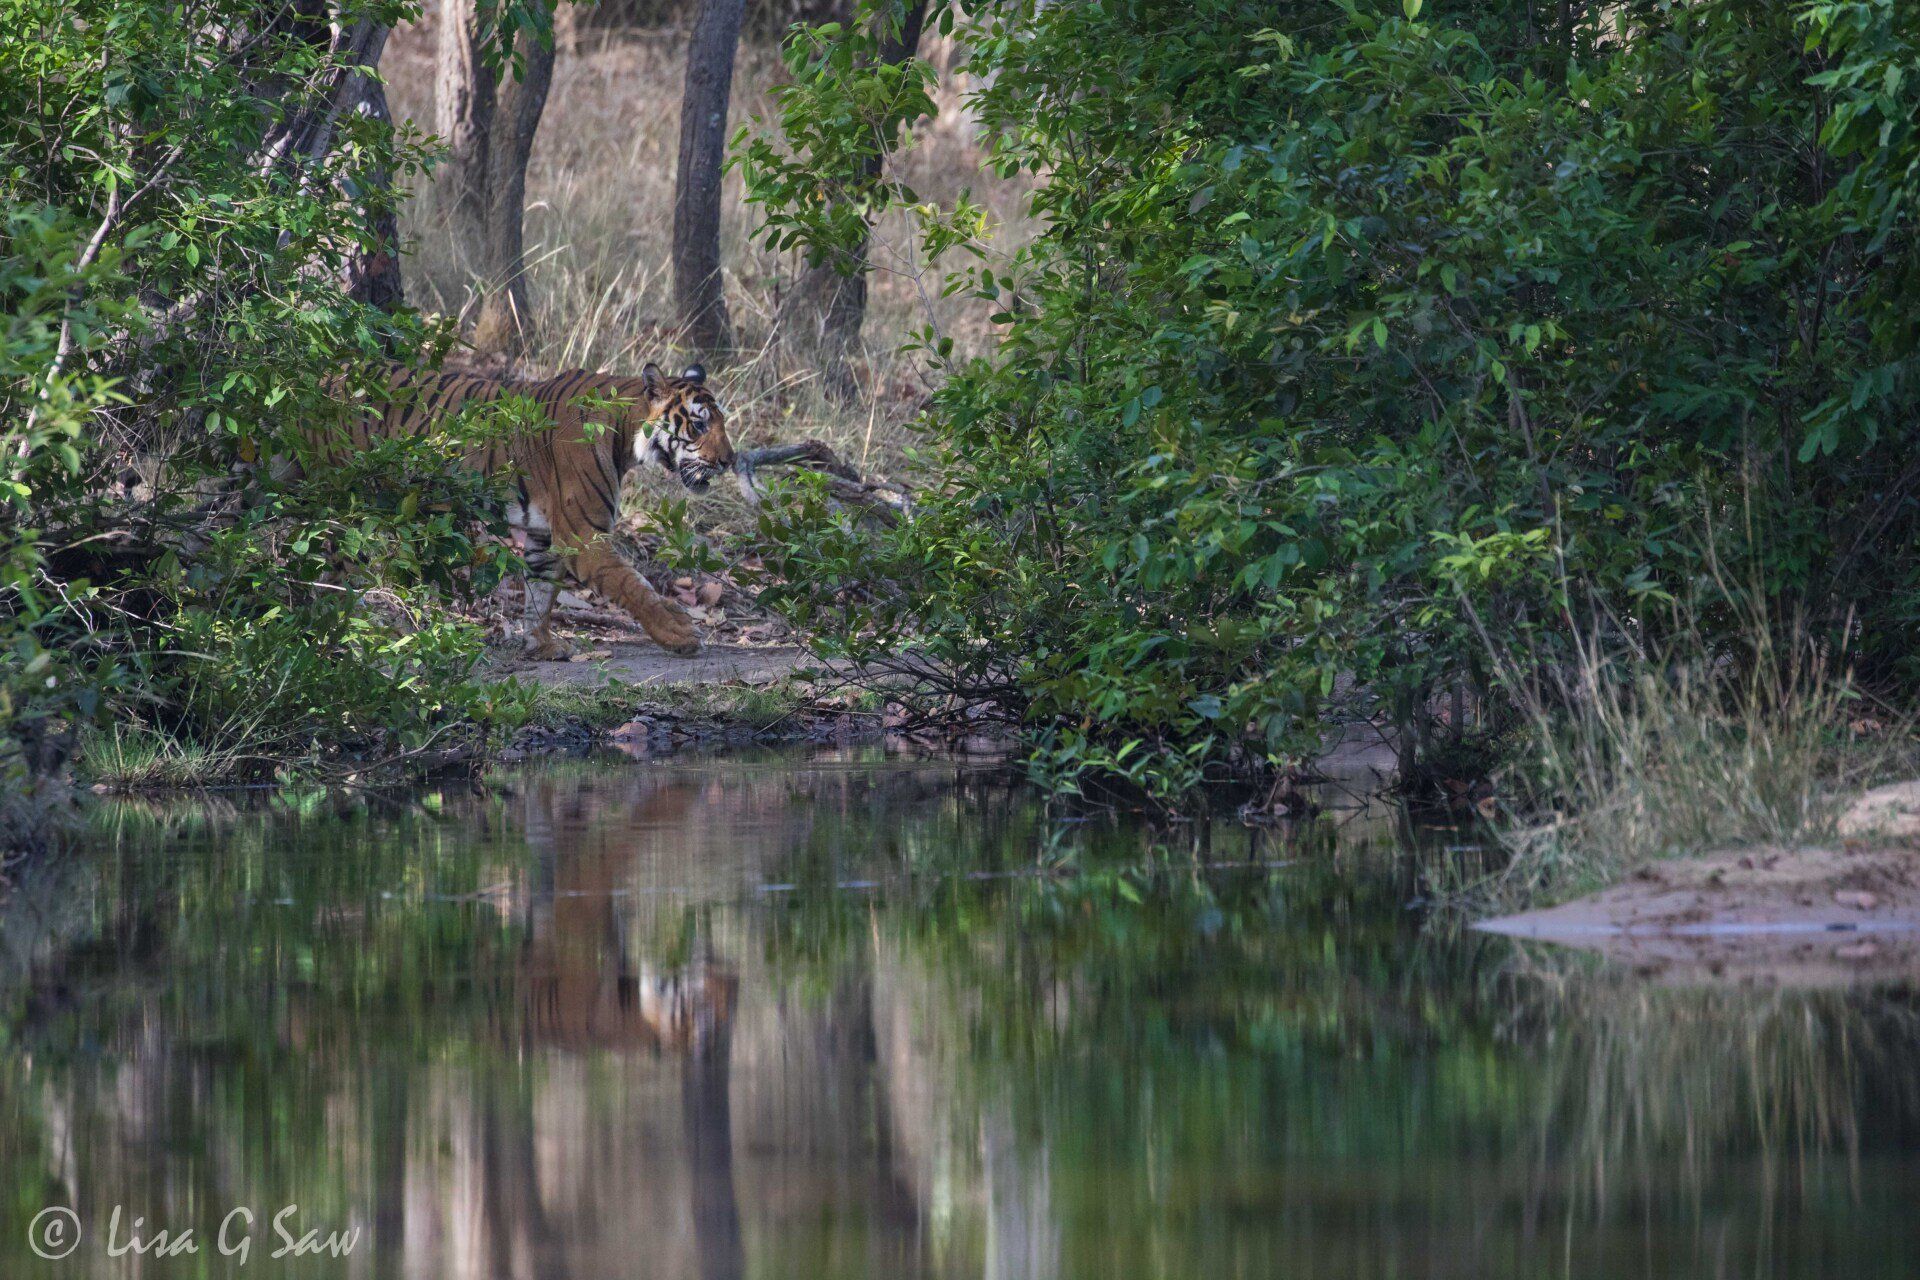 Tiger behind bush walking to water